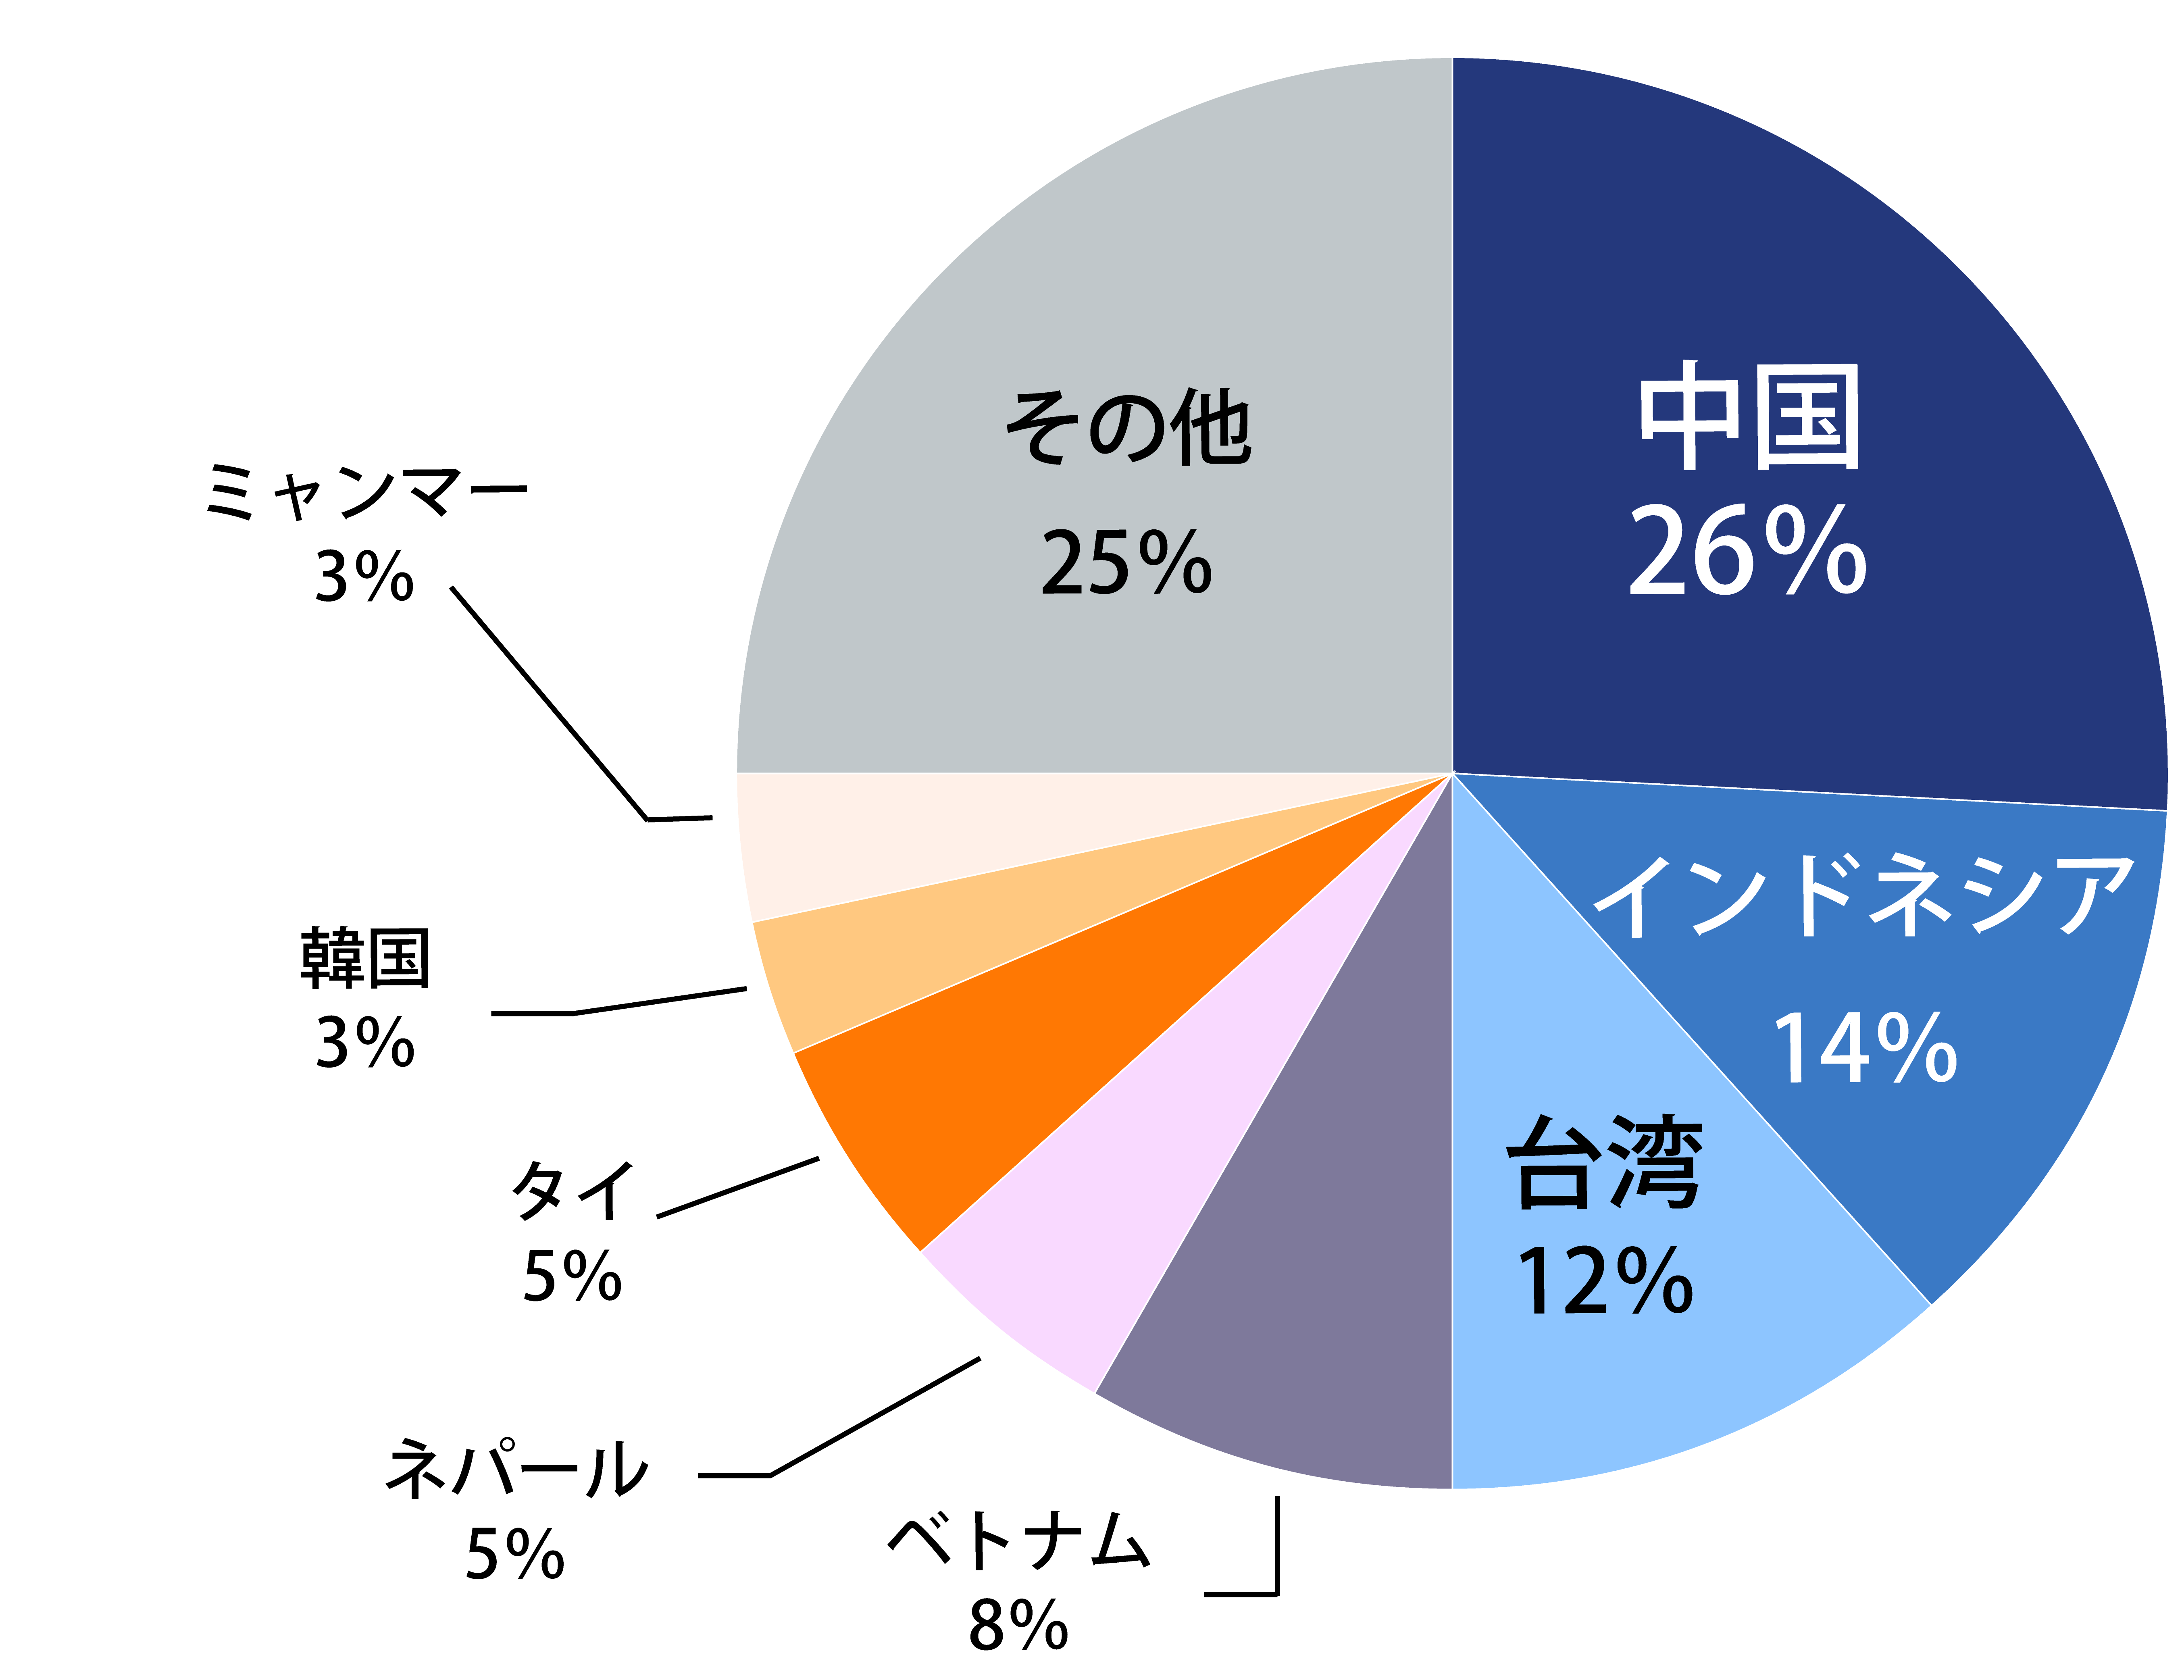 来場者の国籍について。中国26%、インドネシア14%、台湾12%、ベトナム8%、ネパール5%、タイ5%、韓国3%、ミャンマー
                        3%、その他25%